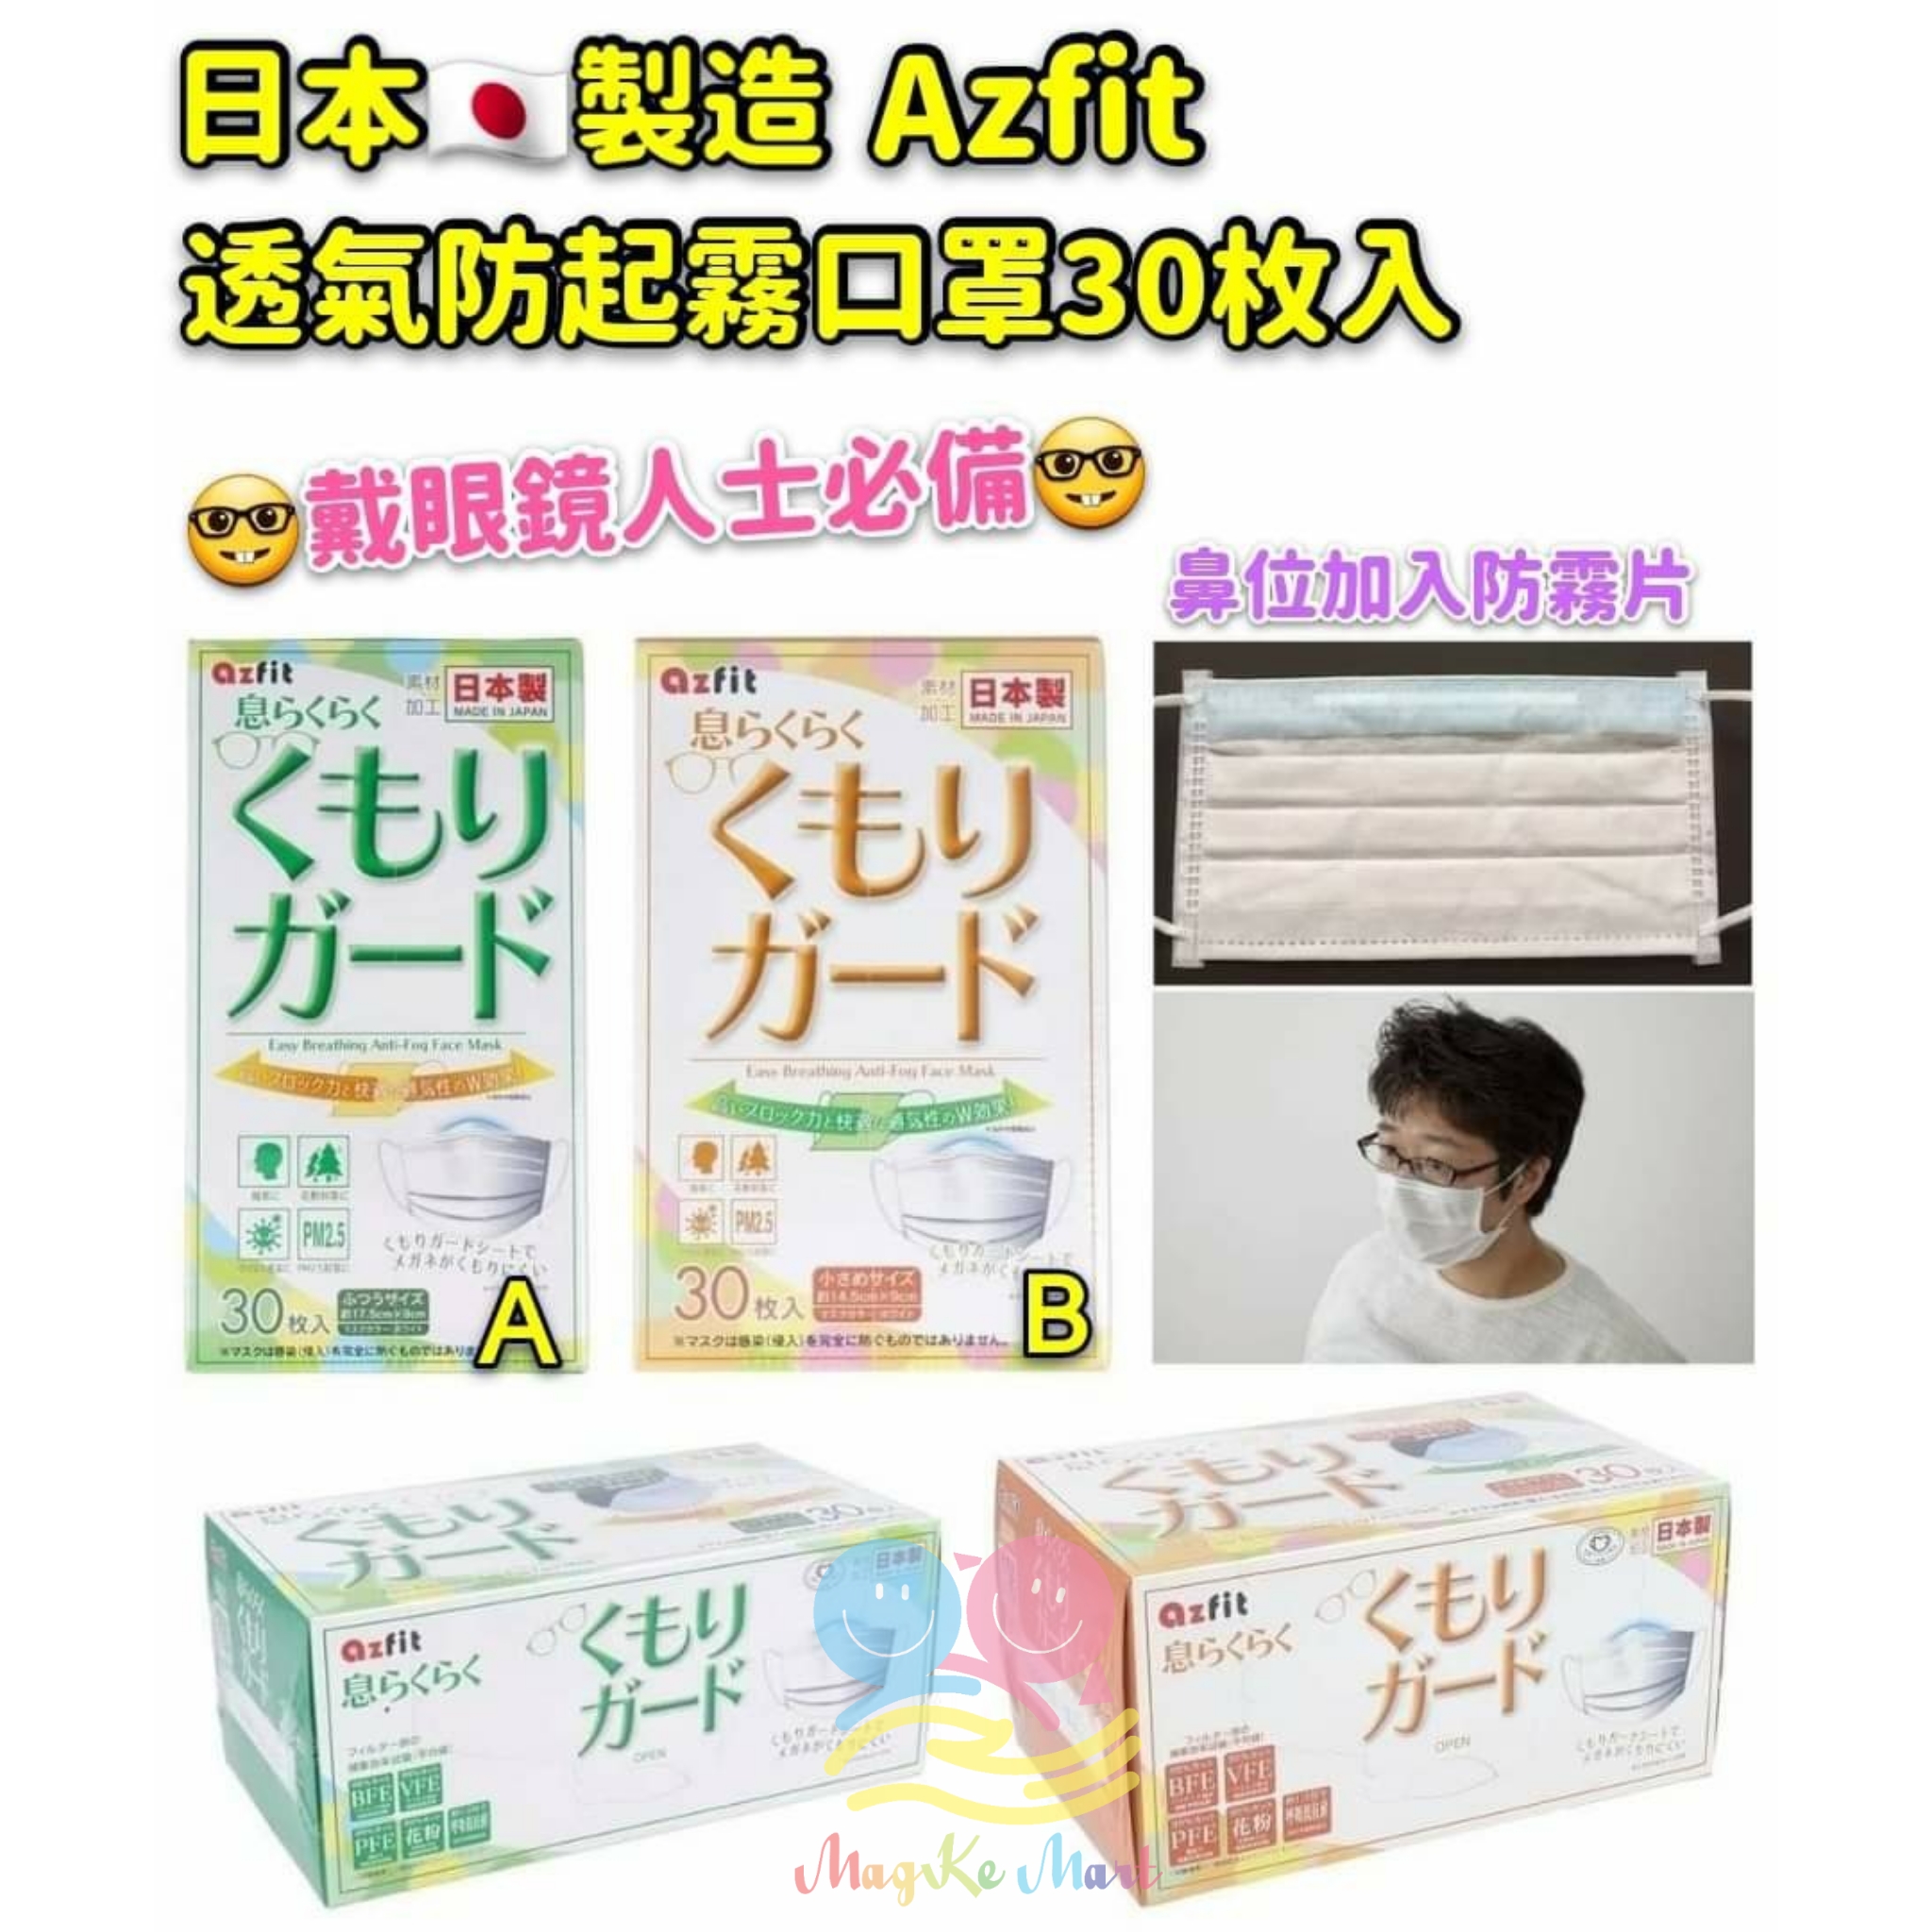 日本 azfit 防霧透氣不織布口罩(1盒30個)(非獨立包裝) (B) 女士/中童款